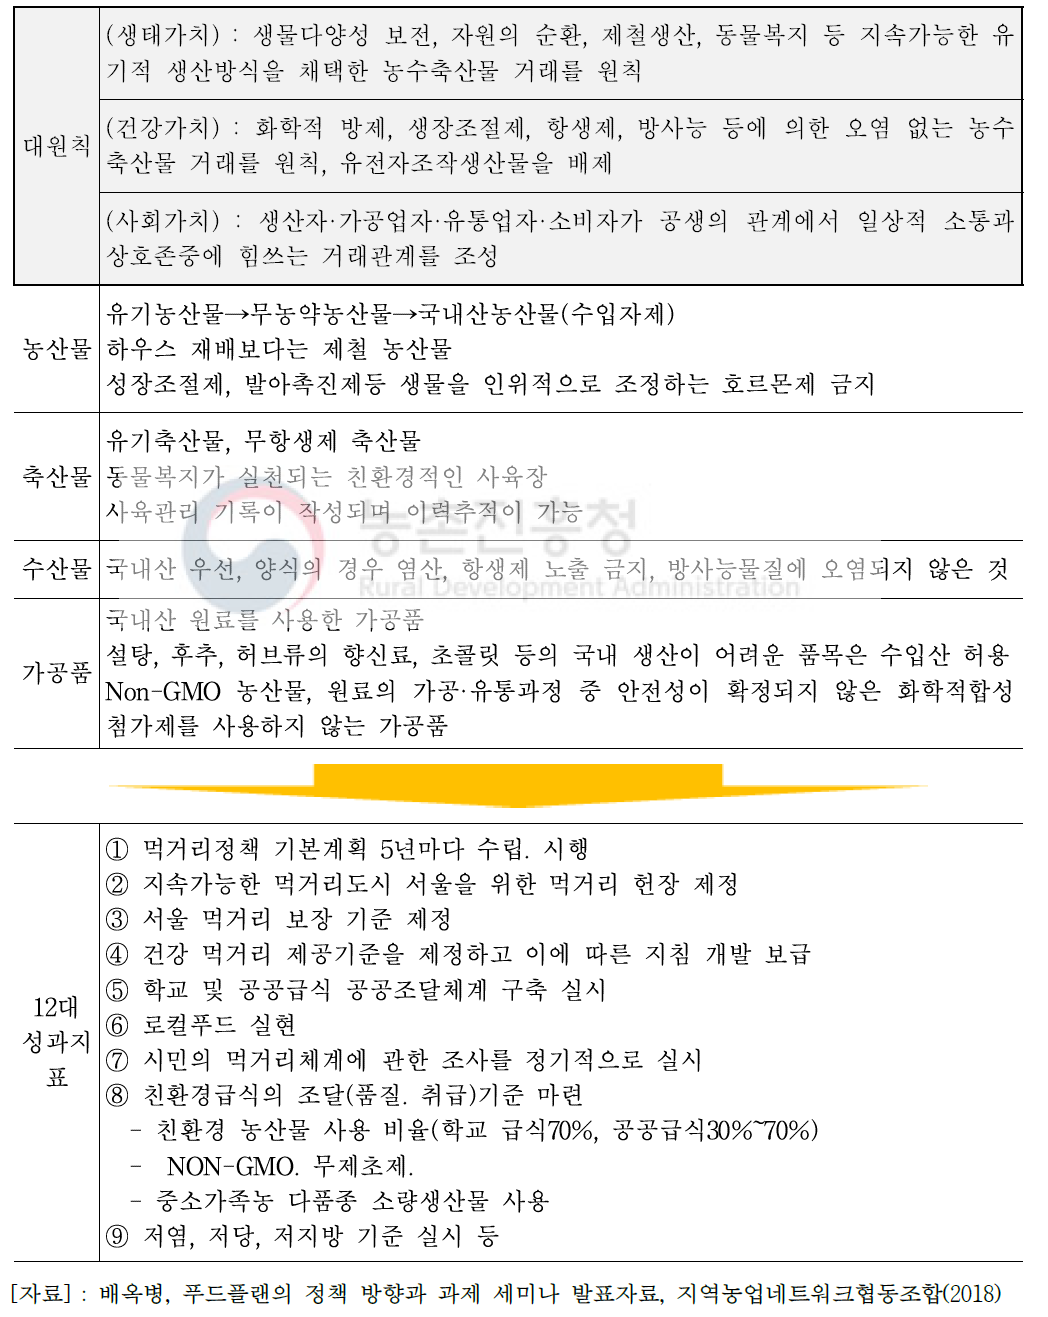 서울시 푸드플랜 정책 지표